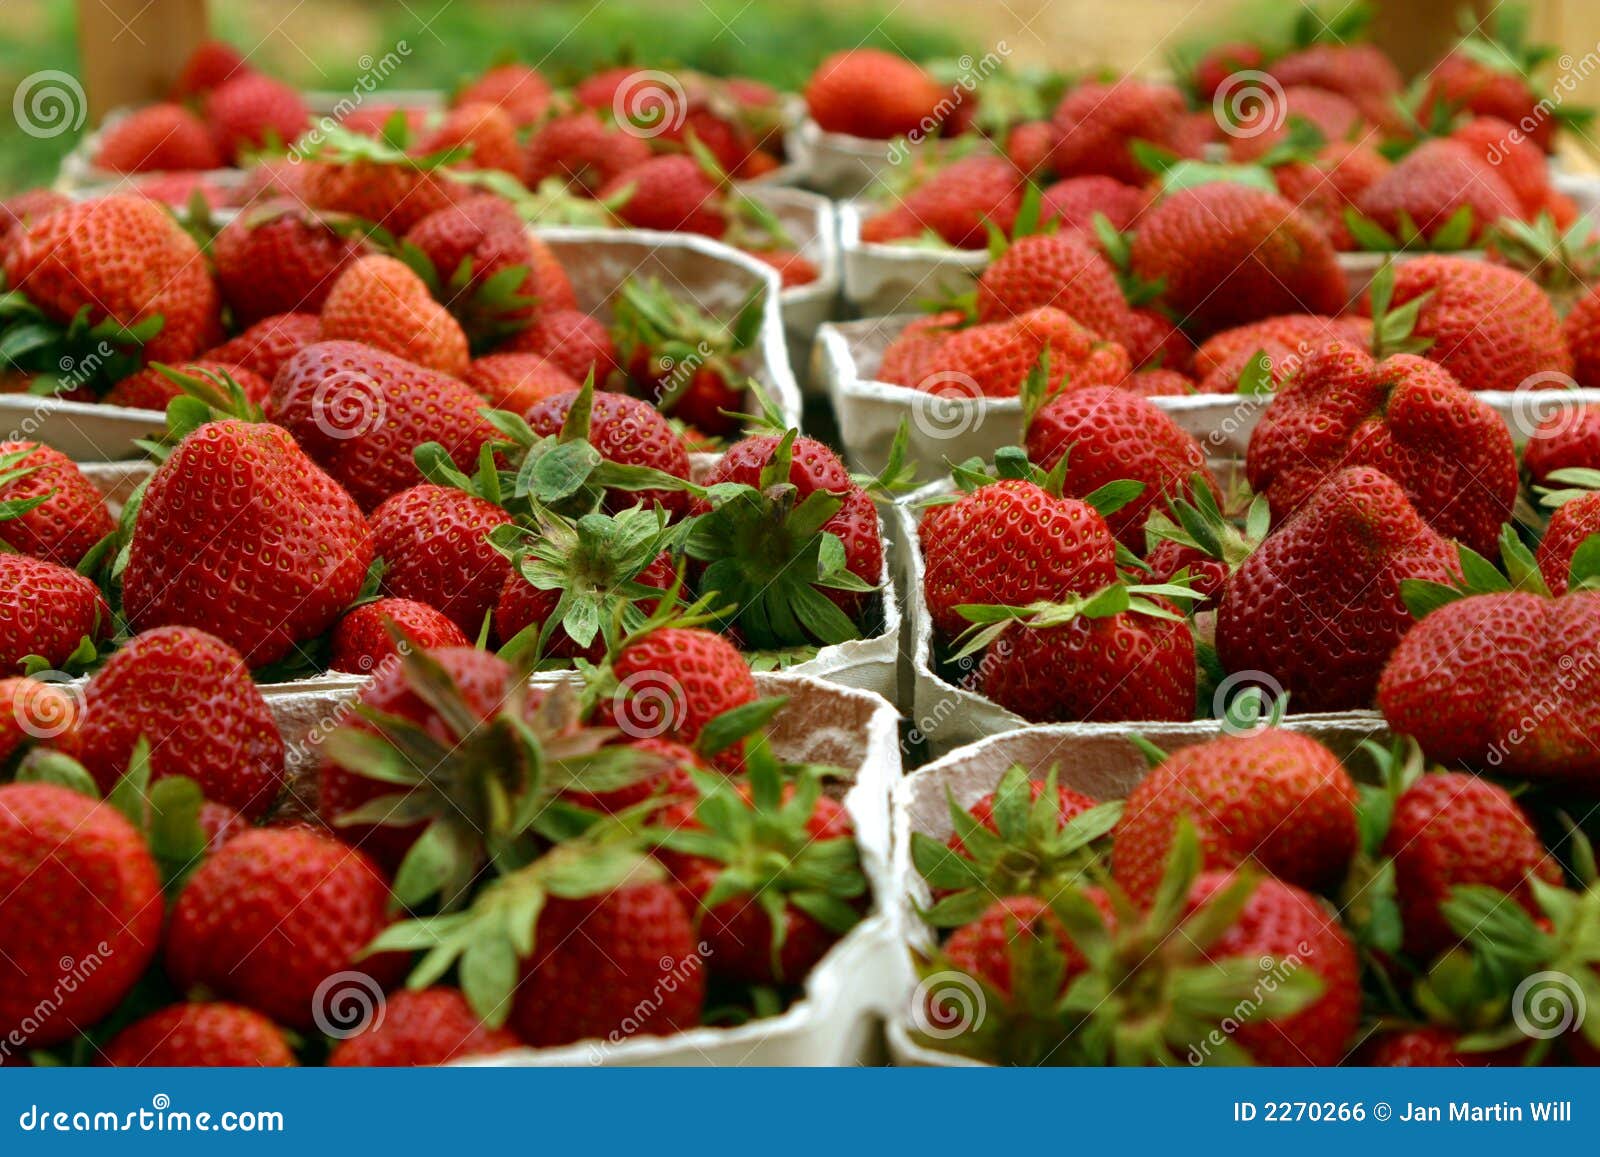 Frische Erdbeeren stockfoto. Bild von reif, beere, erzeugnis - 2270266